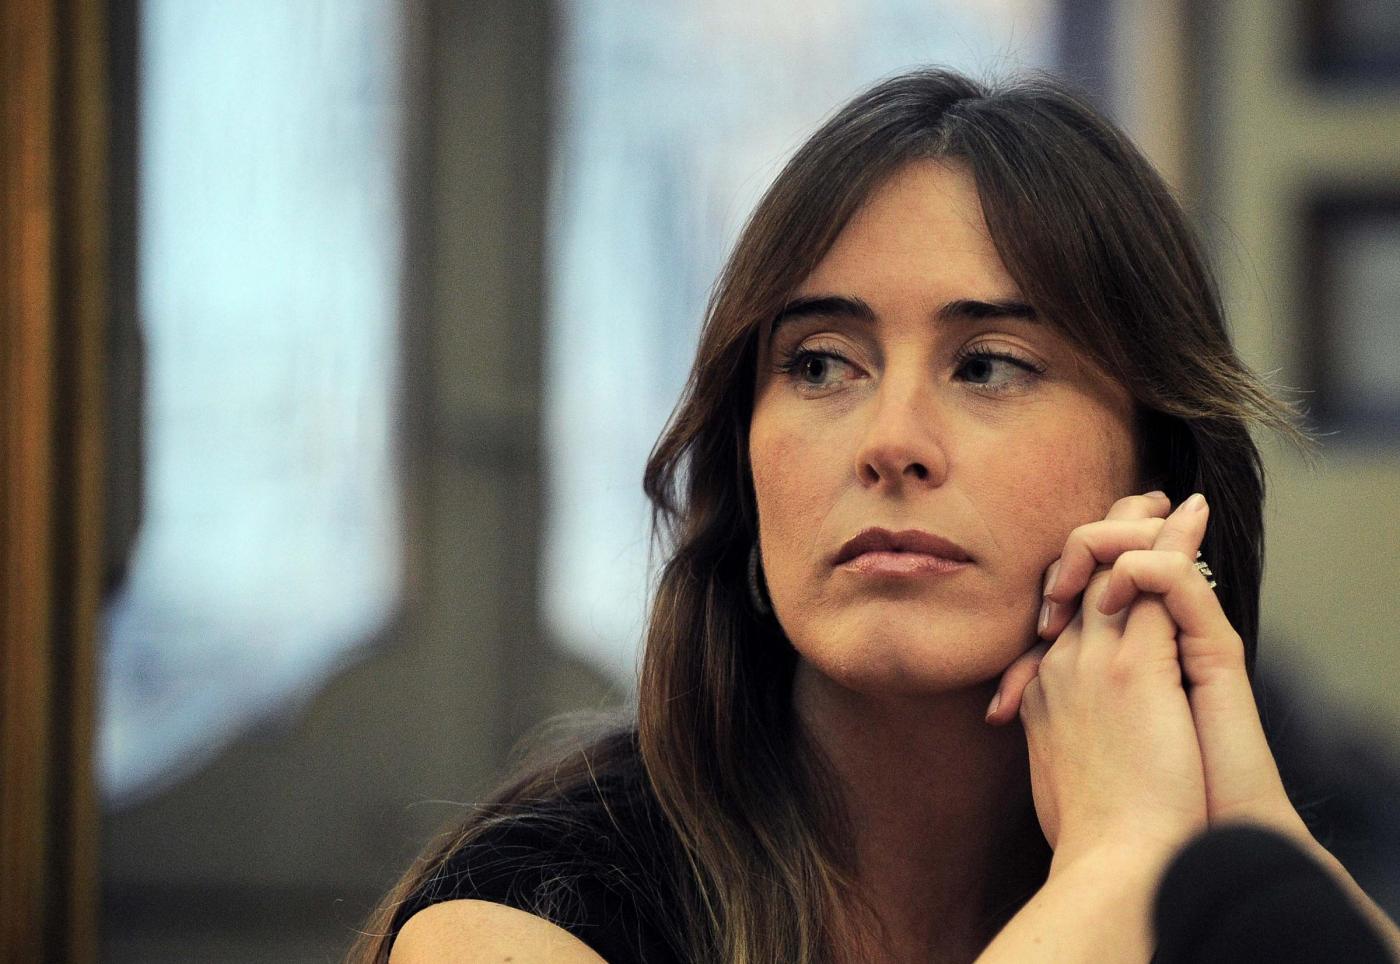 Banca Etruria e Maria Elena Boschi: che c’entra la bella ministra con lo scandalo?